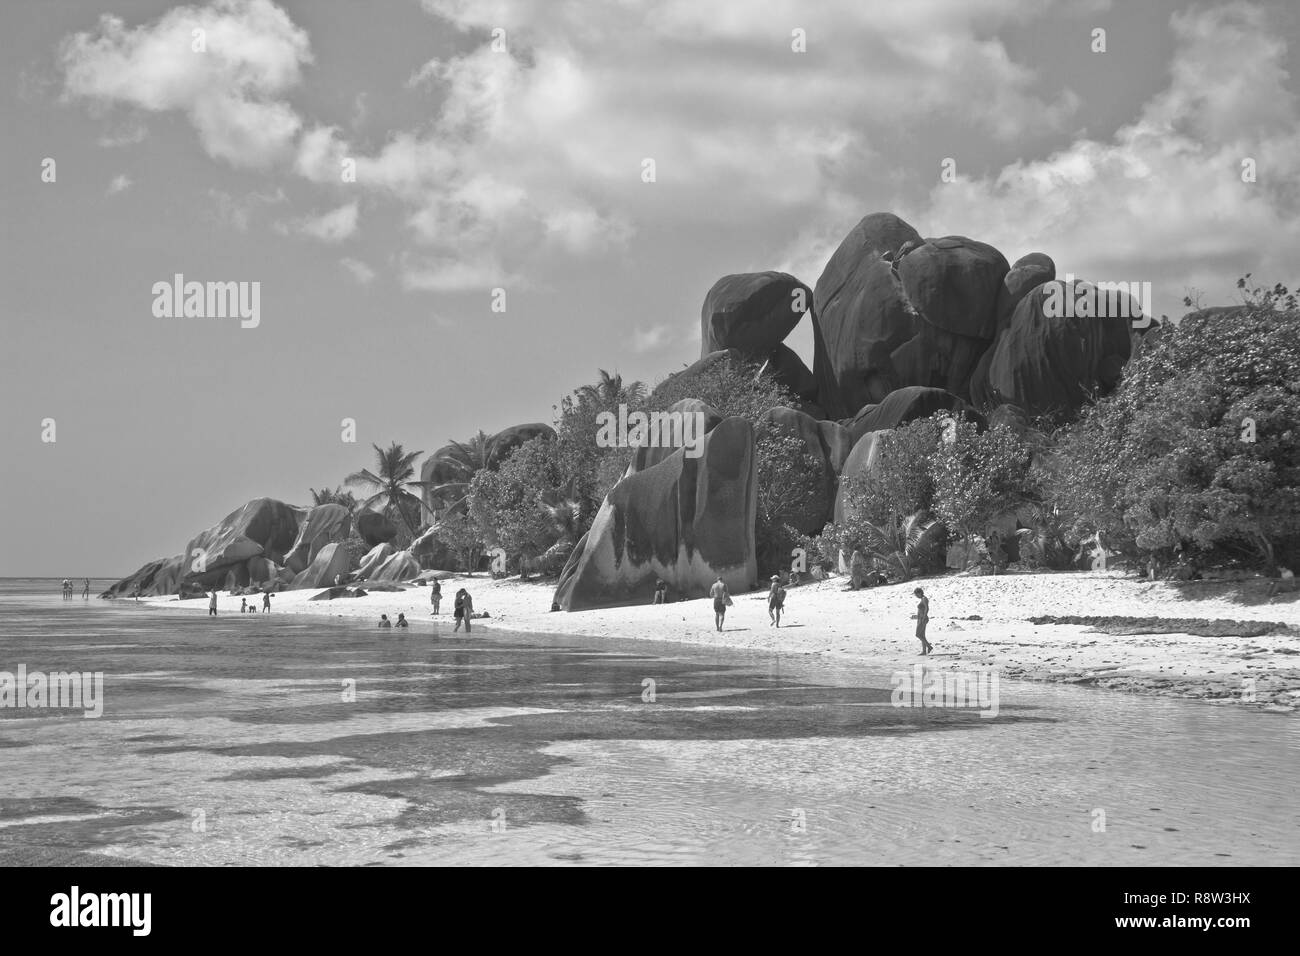 Anse Source d'Argent, La Digue-World-famosa playa, y uno de los lugares más fotografiados en todo el mundo gracias a su increíble belleza natural Foto de stock